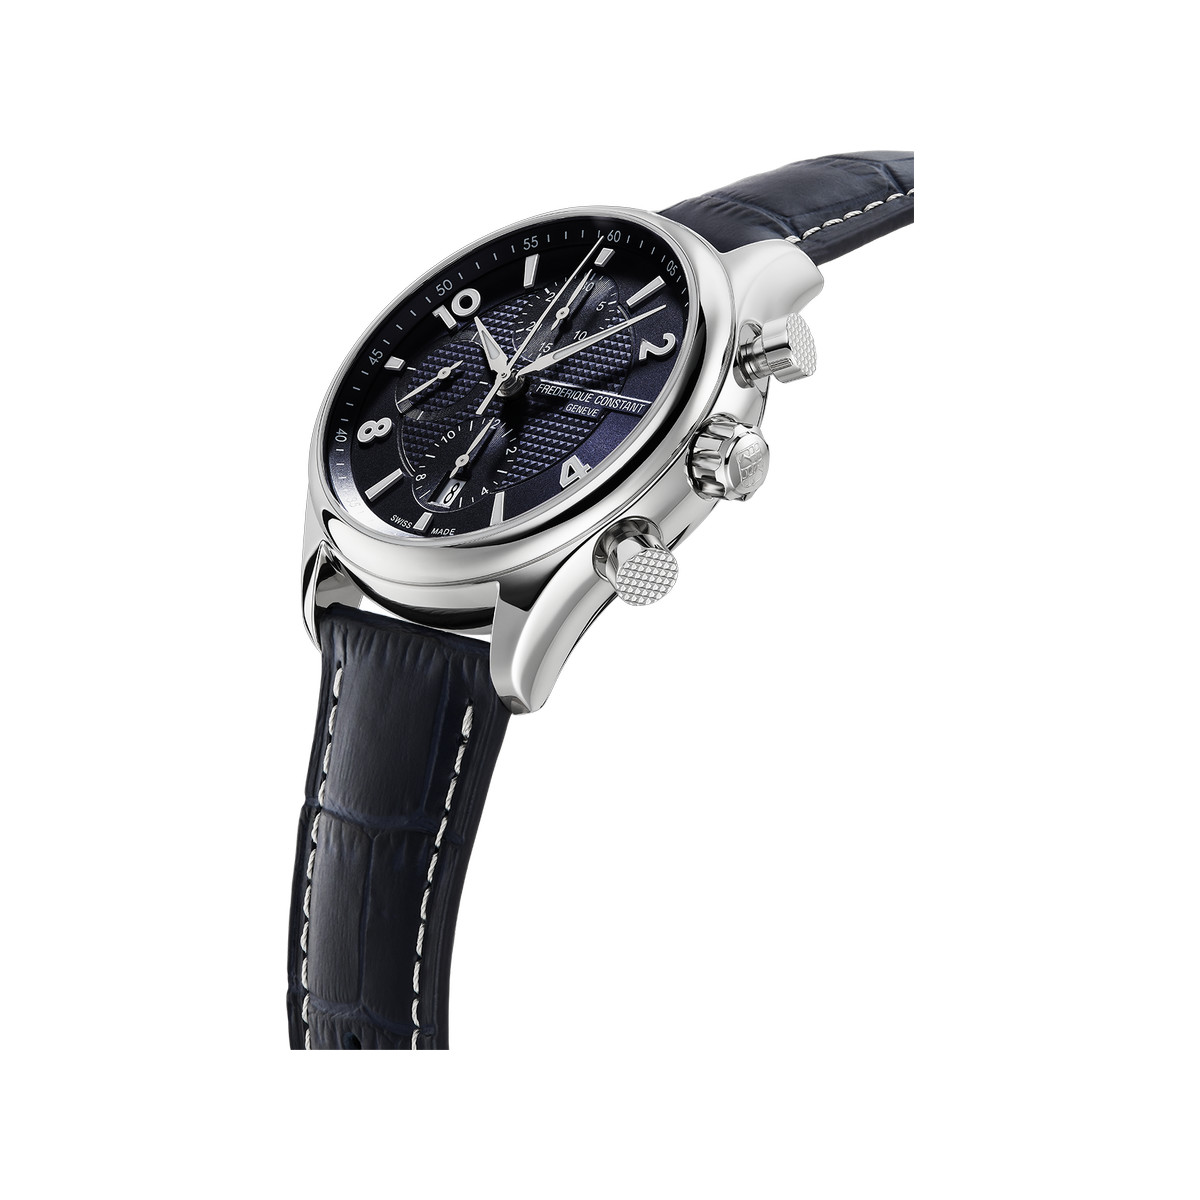 Montre Frédérique Constant homme automatique chronographe acier cuir bleu - vue 2